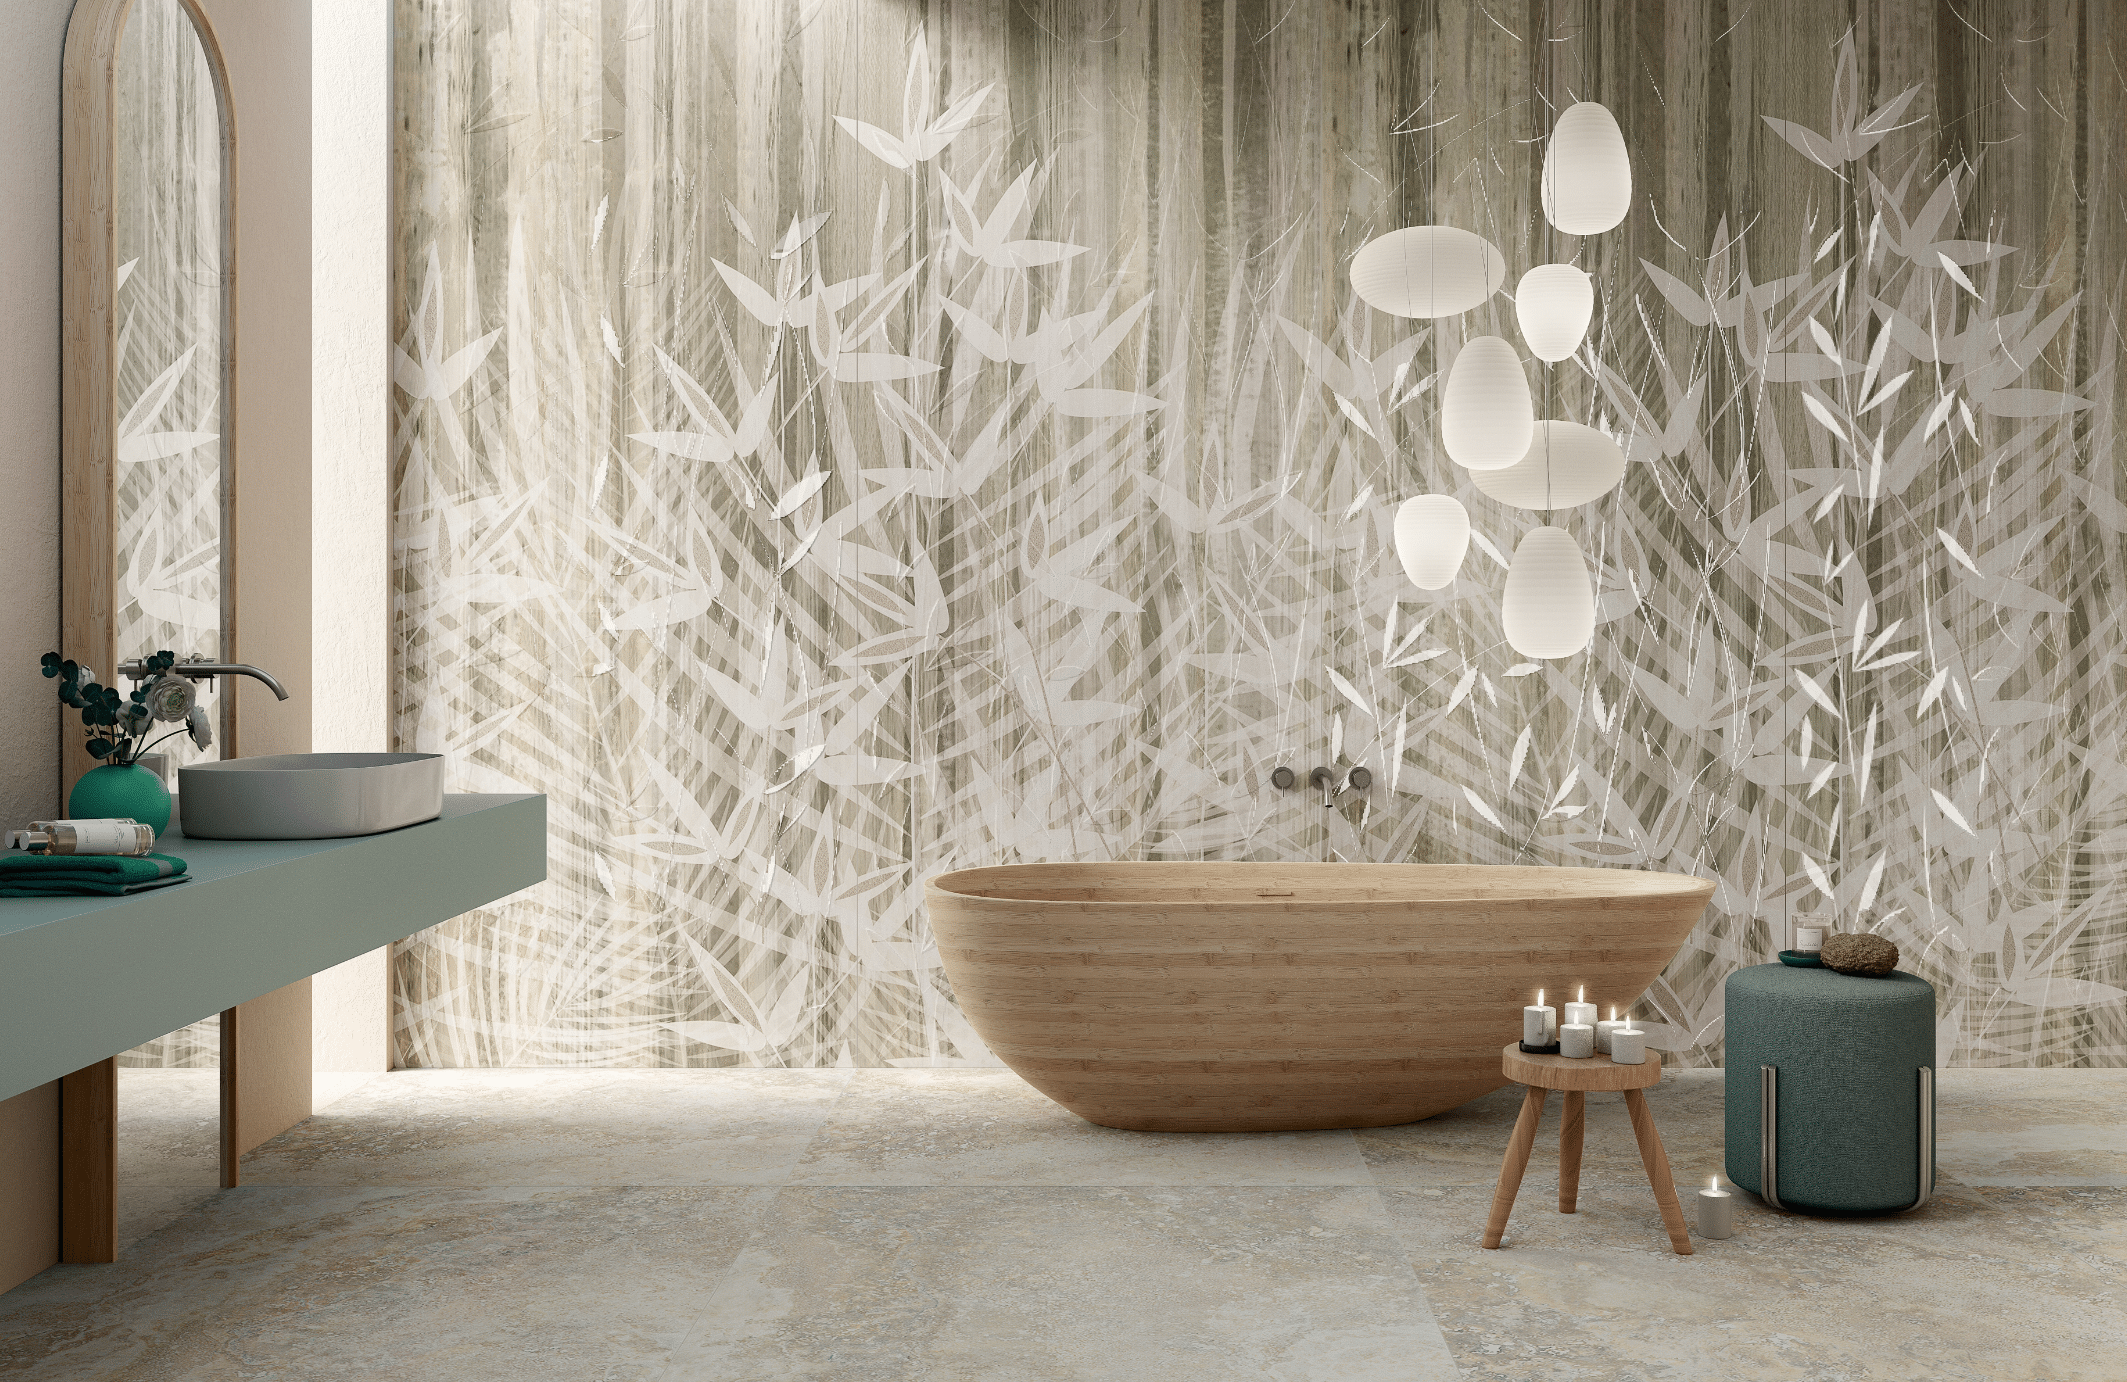 Fliesendorf zeigt ein modernes Badezimmer mit hellem Fliesenboden und einer Badewanne in Holzoptik mit kleinem Beistelltisch und grünem Hocker vor einer gemustertem Wand.